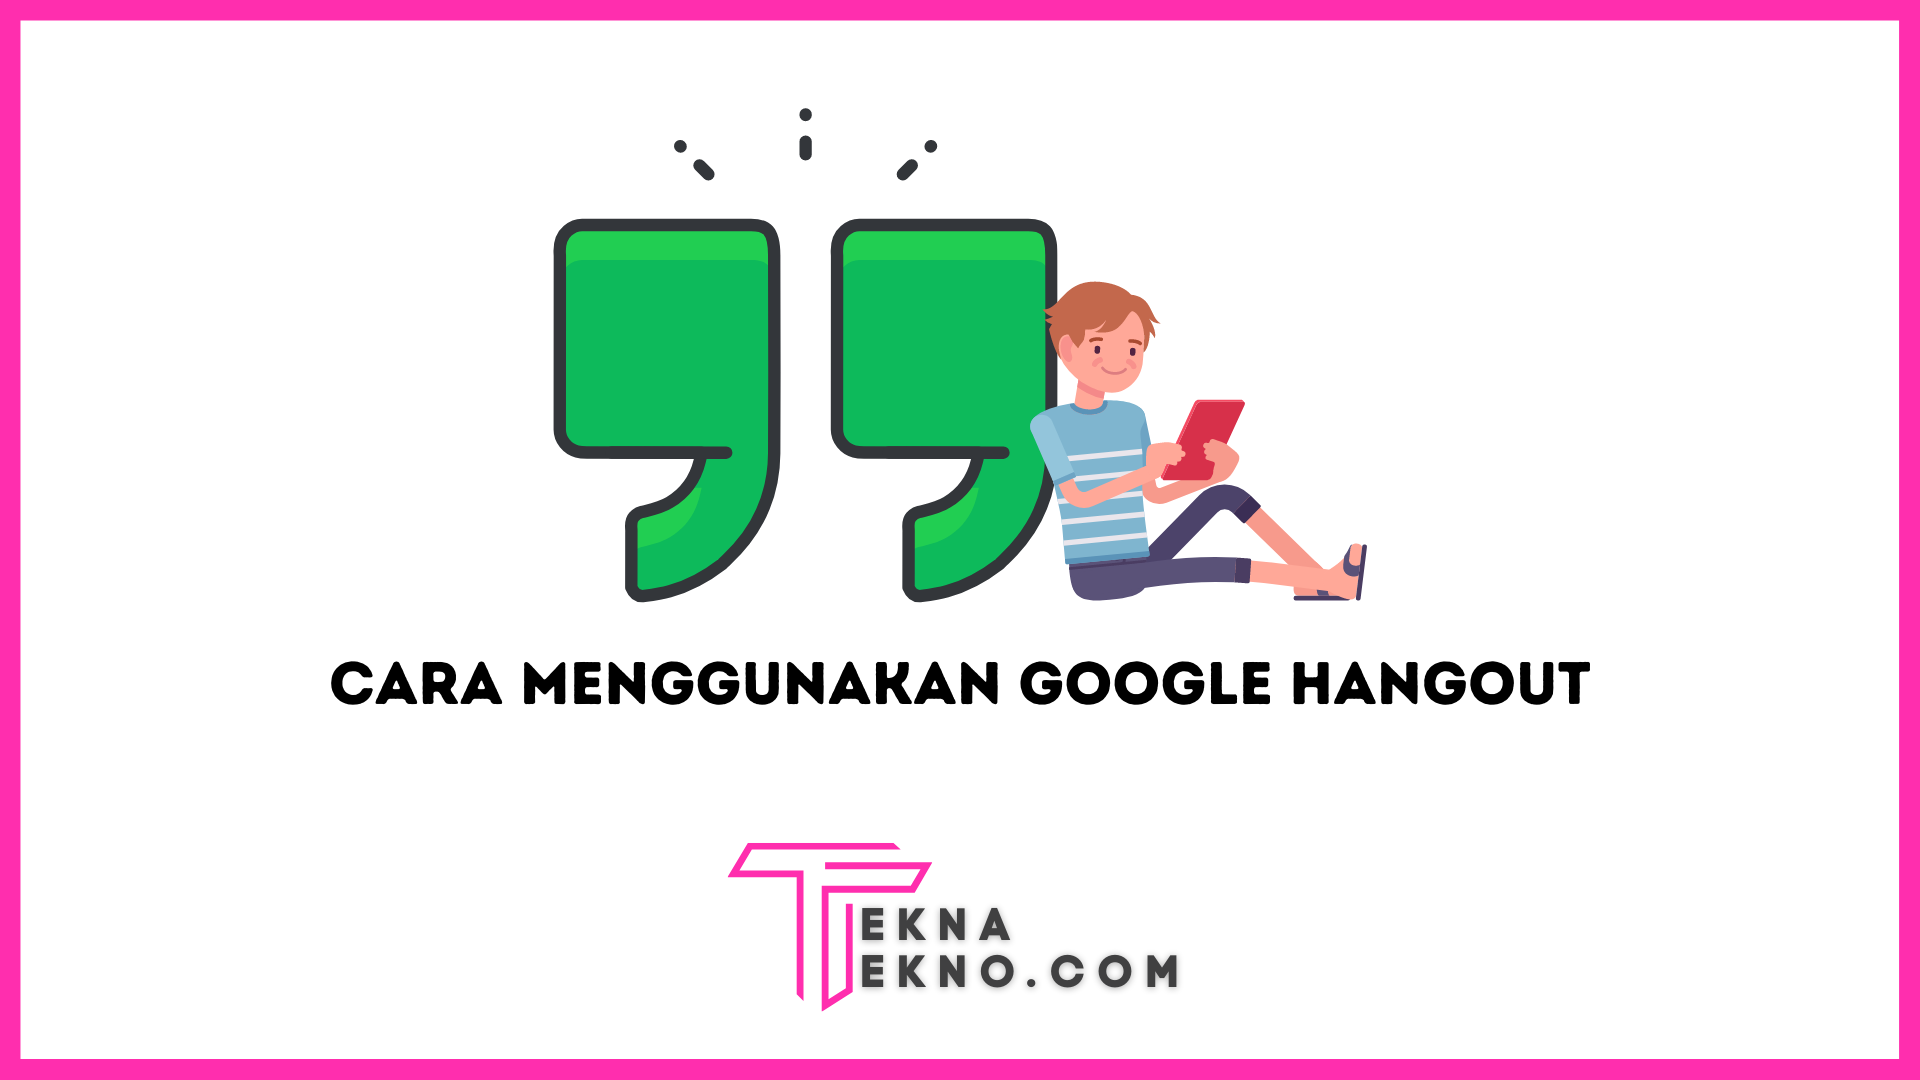 2 Cara Menggunakan Google Hangout dengan Mudah di PC dan Smartphone